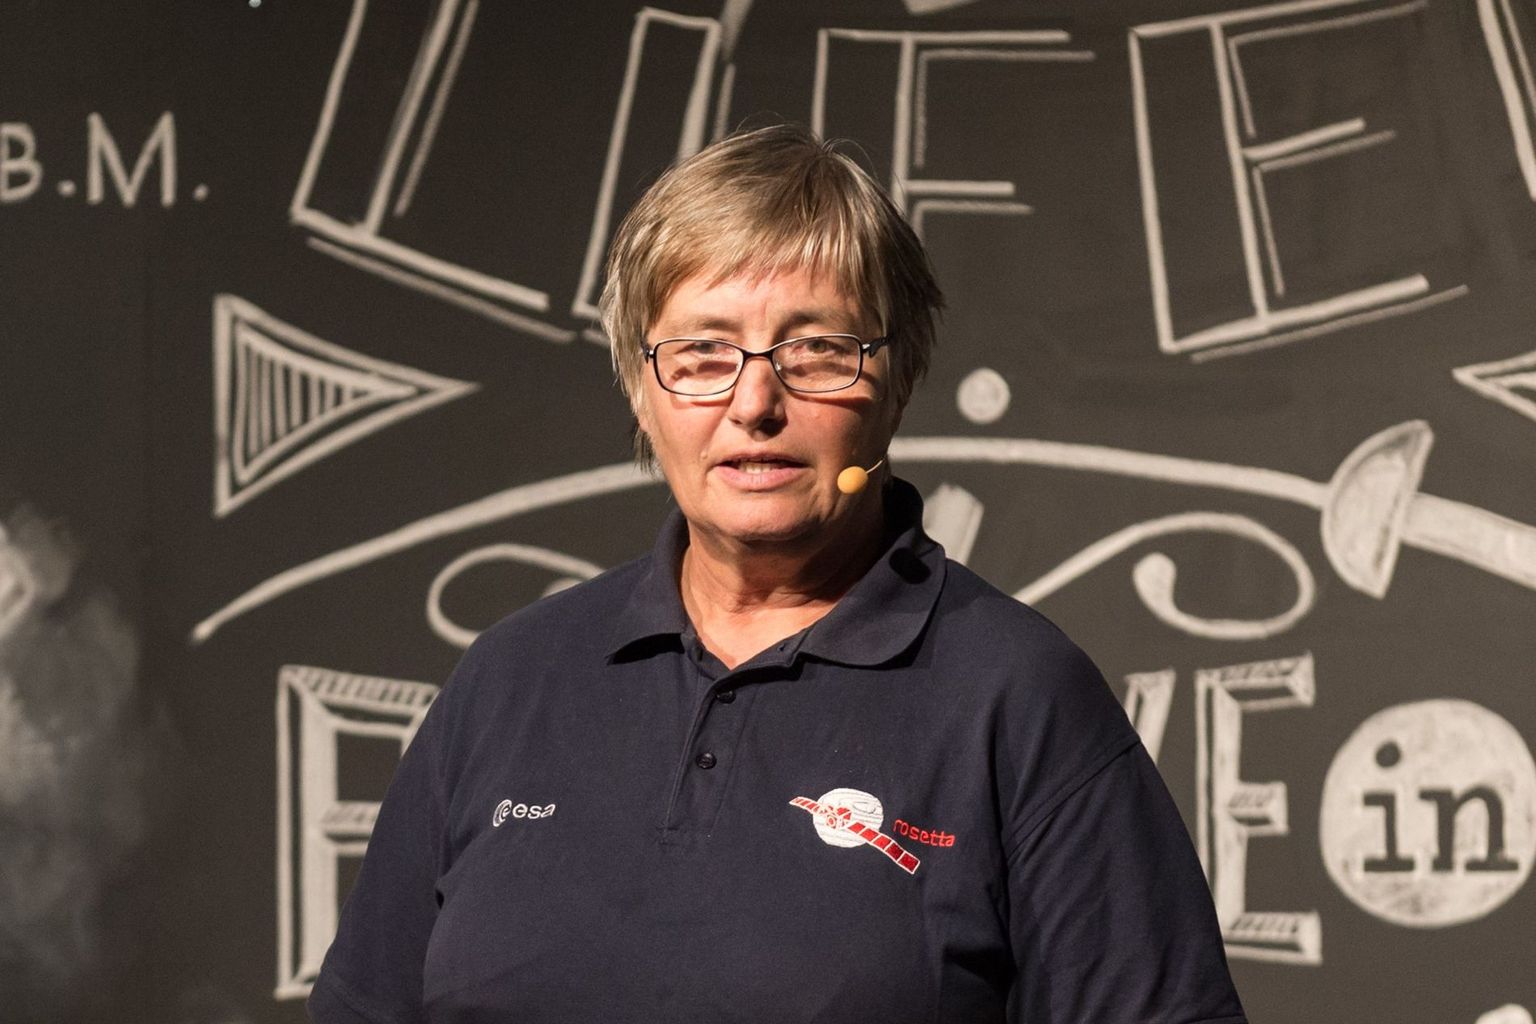 Kathrin Altwegg a accompagné la mission ROSETTA de l'Agence spatiale européenne (ESA) de 1996 à 2016 en dirigeant scientifiquement l'expérience ROSINA sur le vaisseau spatial ROSETTA. Plus tard, elle a été la première directrice du Center for Space and Habitability (CSH) à l'Université de Berne.